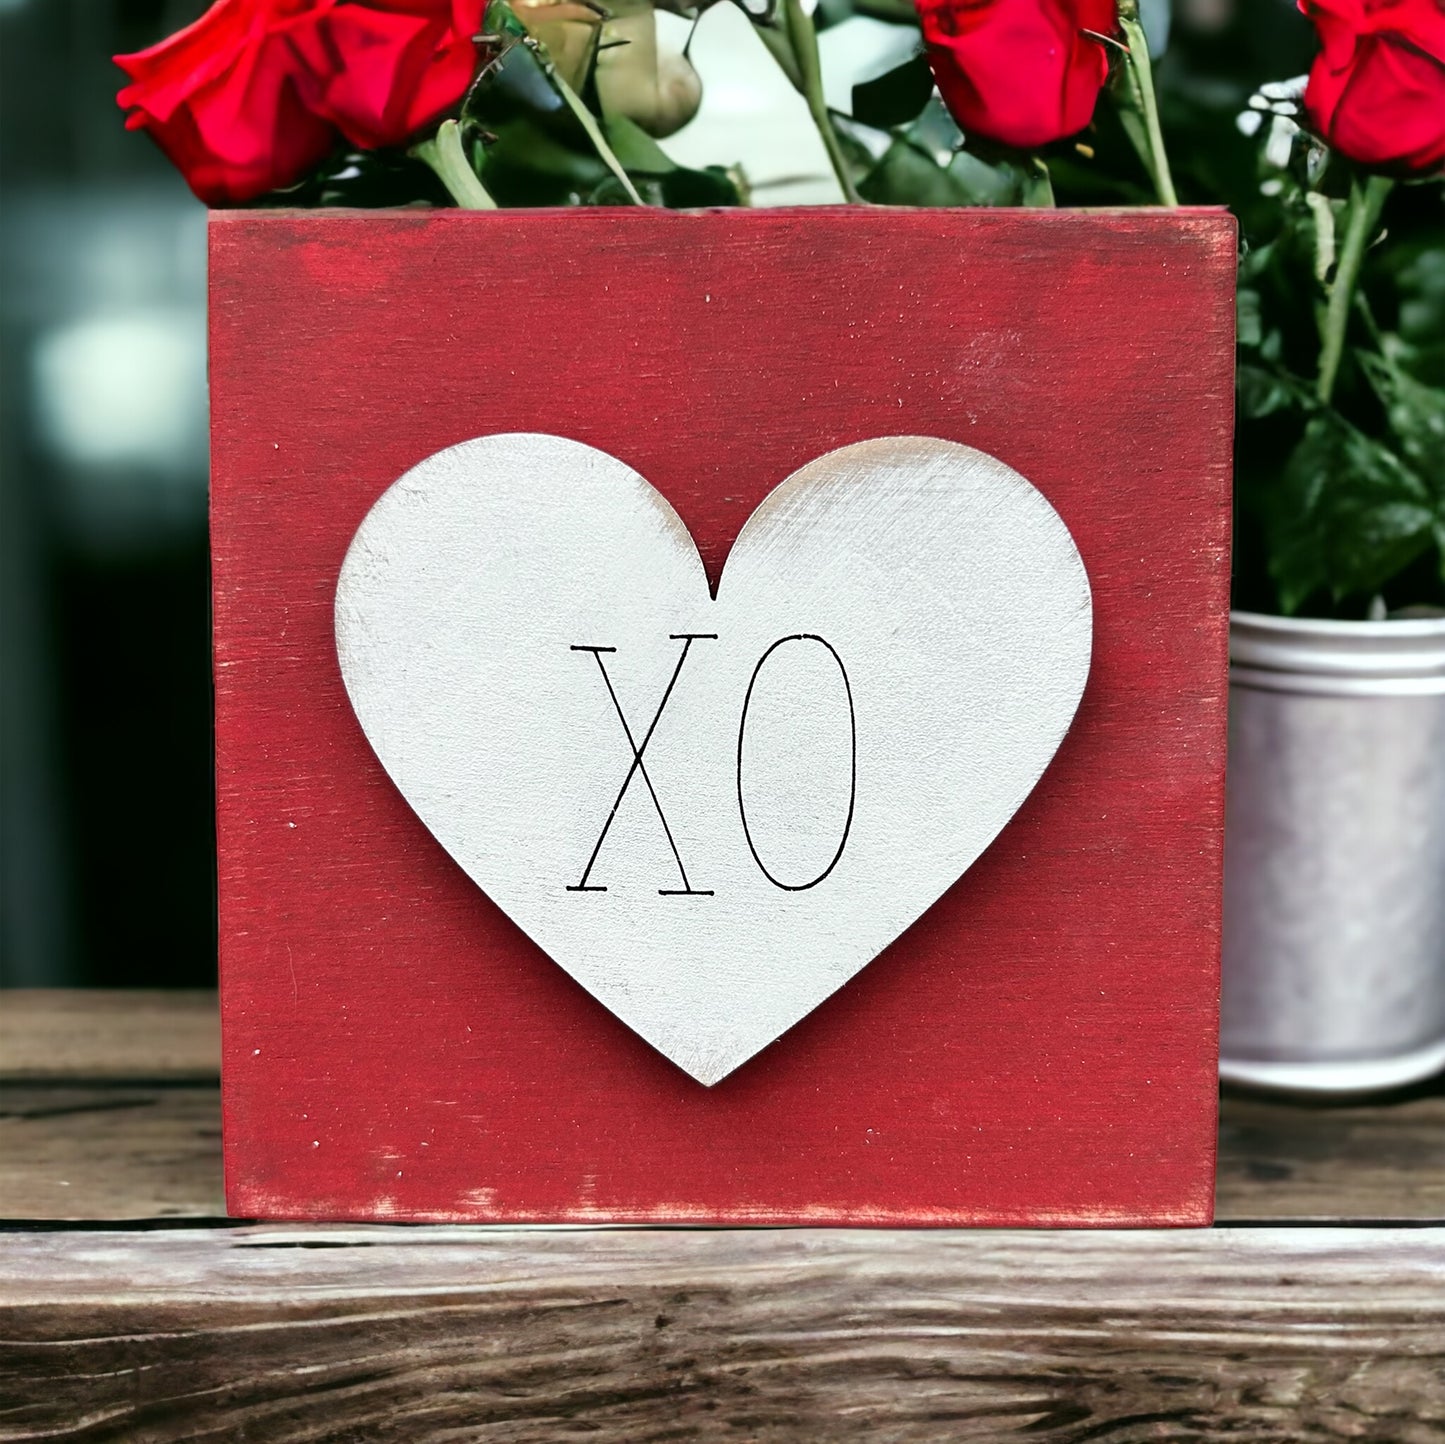 Red/White wood heart "XO"